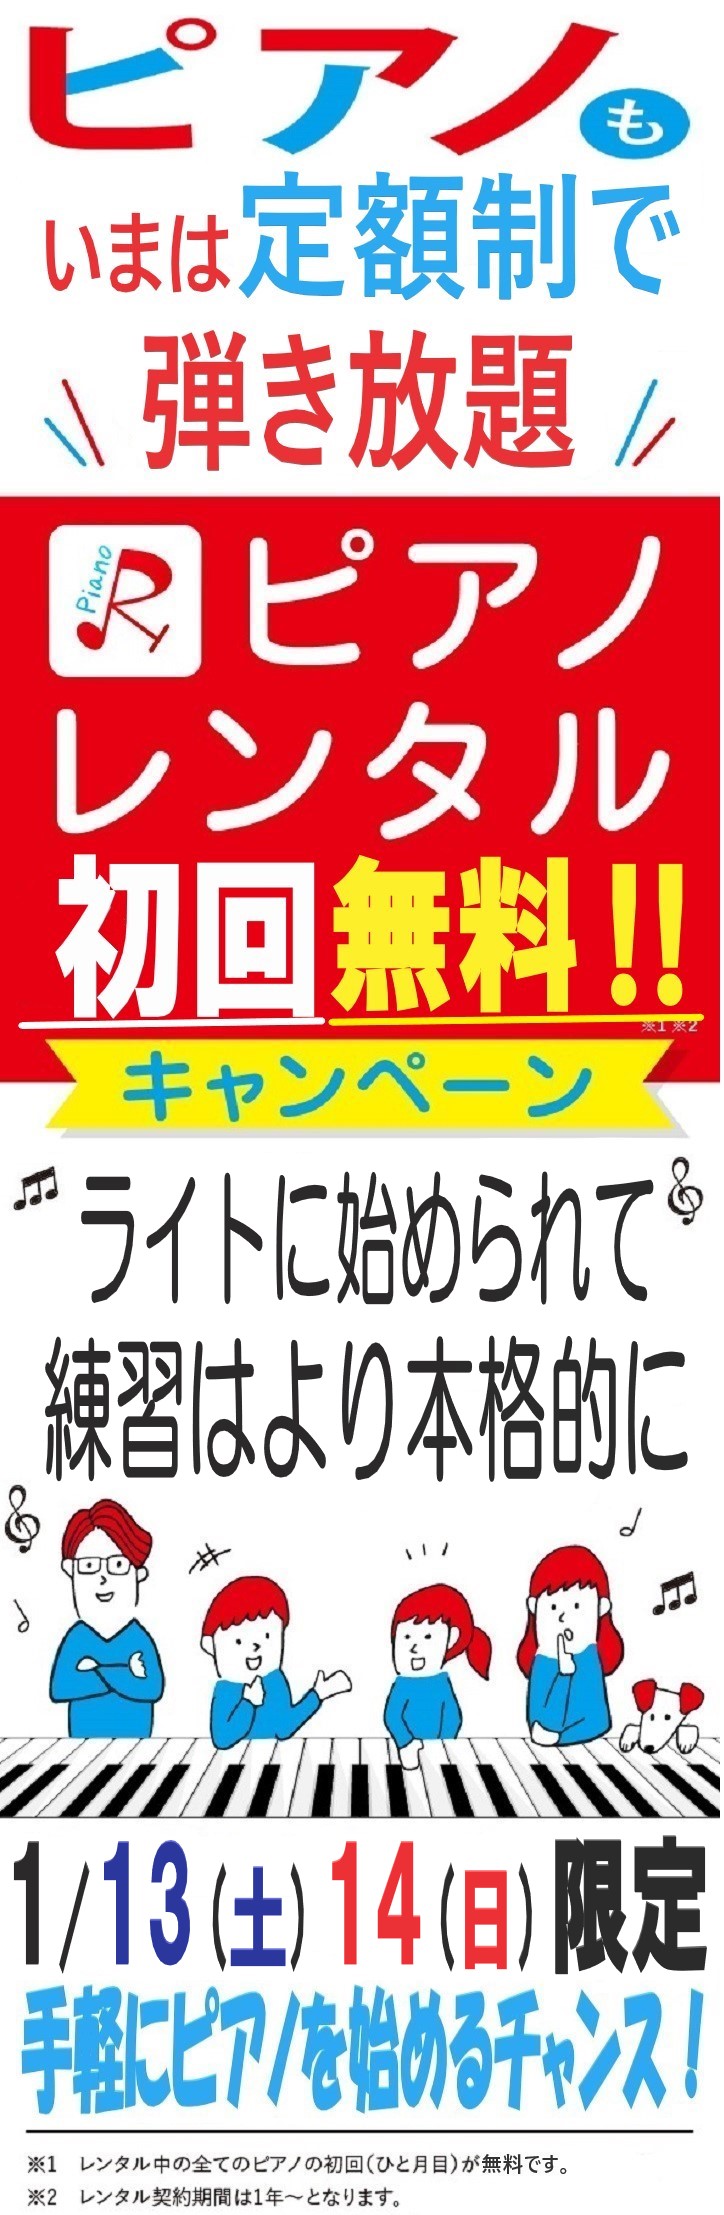 【キャンペーン】1/13(土)1/14(日)ピアノレンタル初回1ケ月が無料🎹